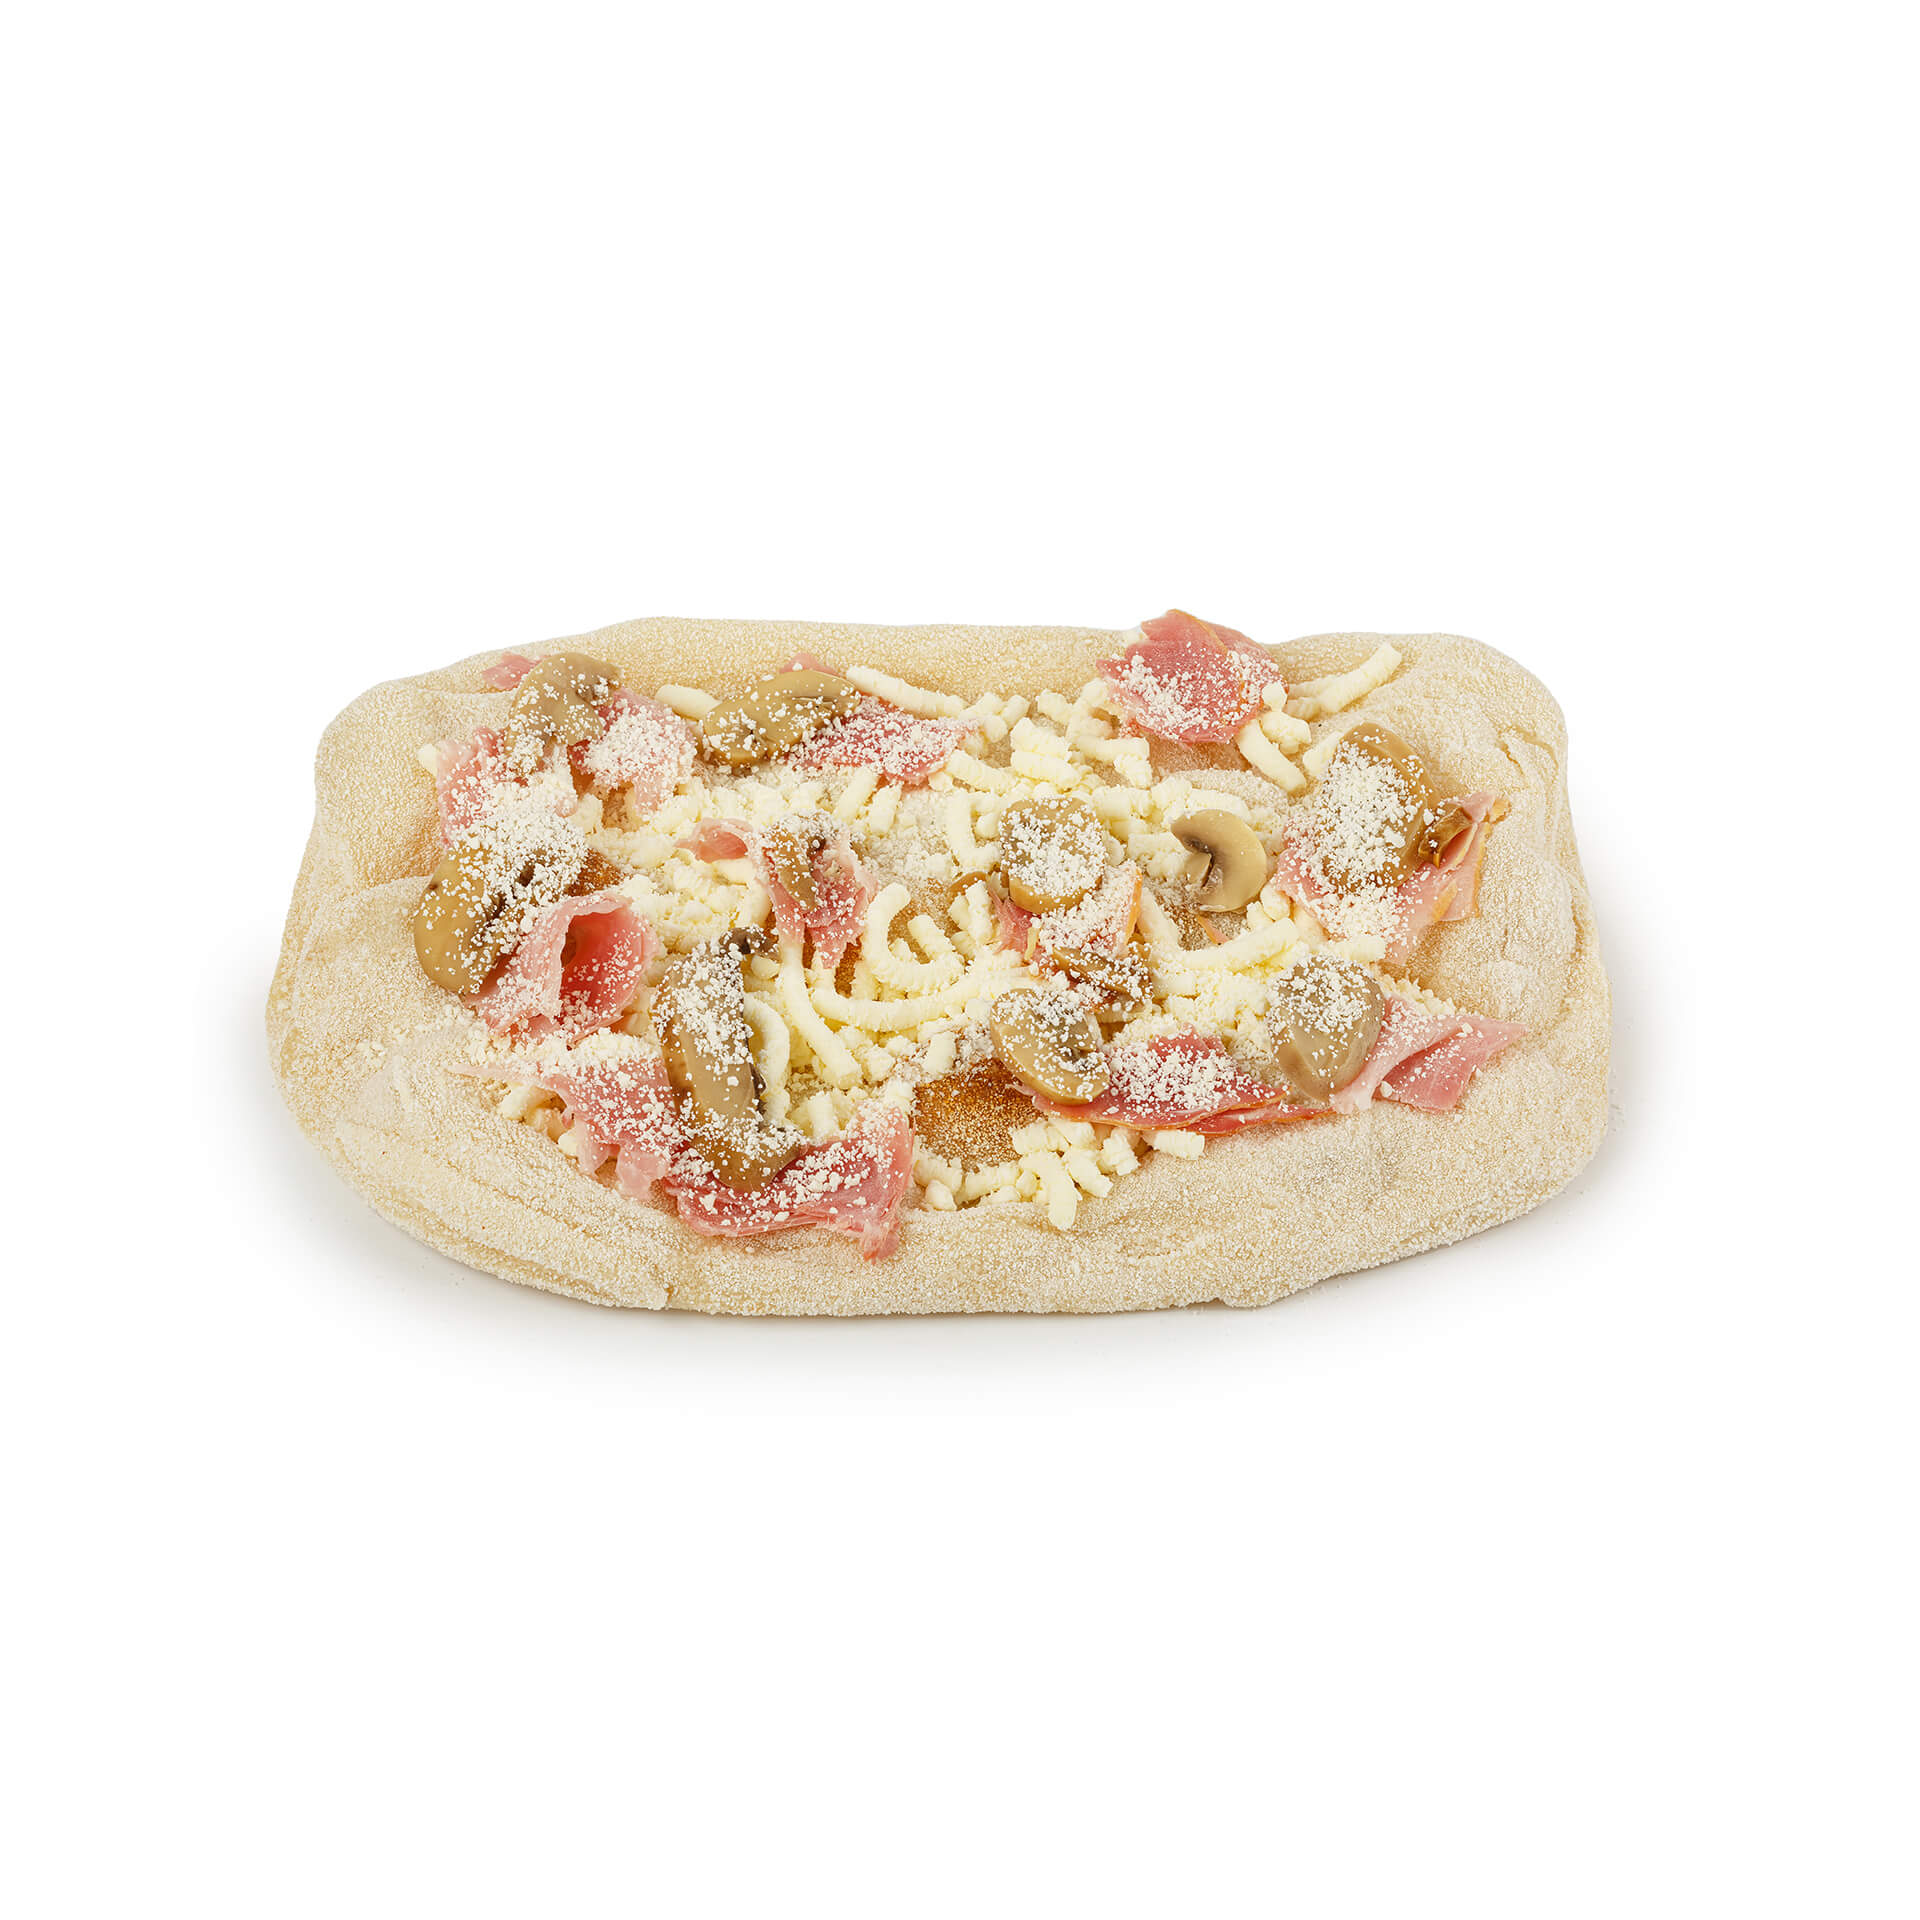 Пицца "Прошутто с грибами" с прошутто котто и грибами полуфабрикат замороженный Maestrello 360 г 8806LED, общий вид, купить оптом с доставкой по москве и московской области, недорого, низкая цена